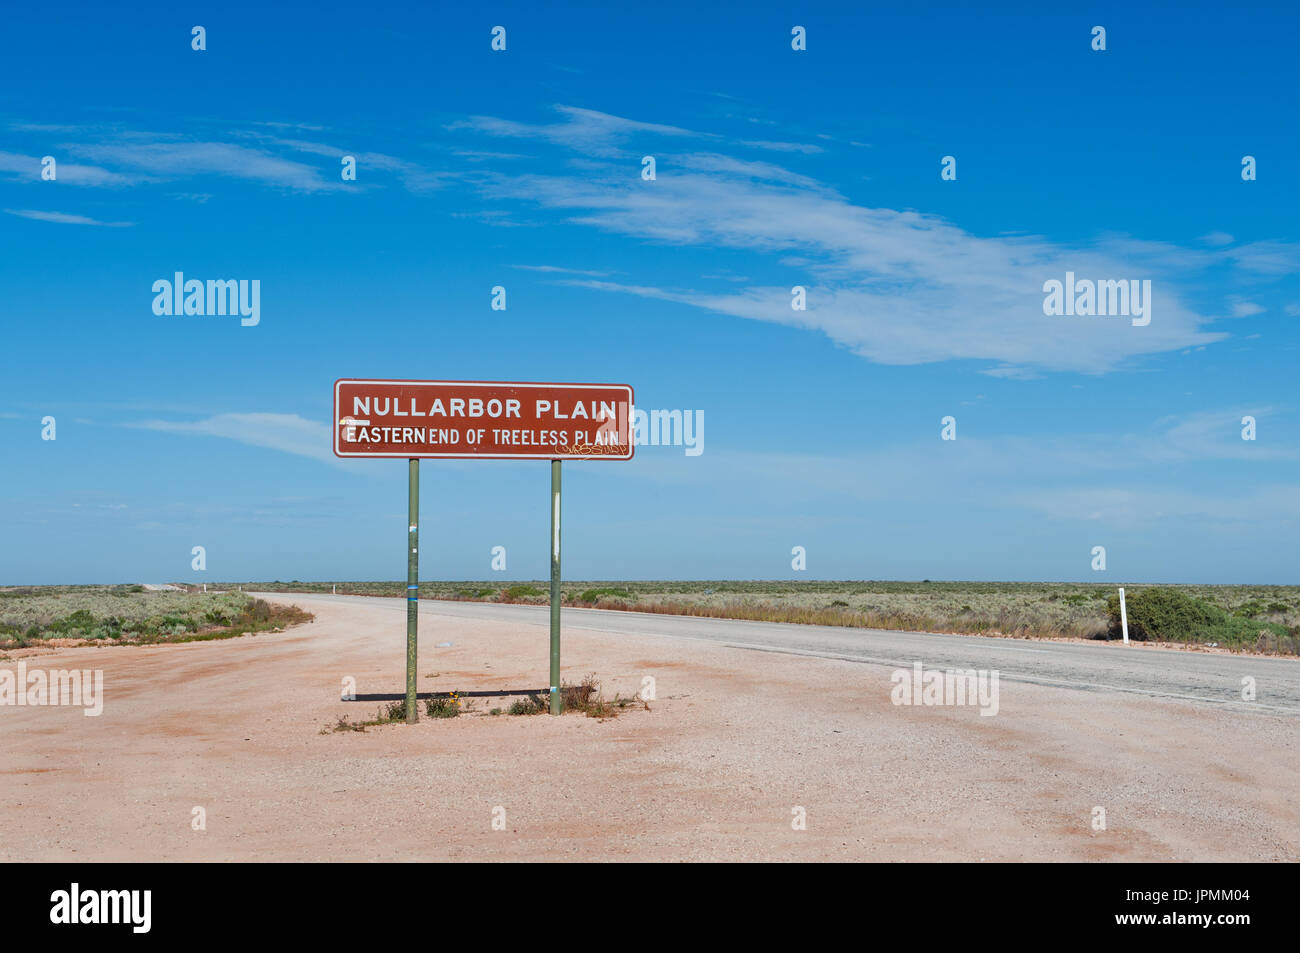 Cartello stradale mostra l'estremità orientale del Nullarbor Plain. Foto Stock